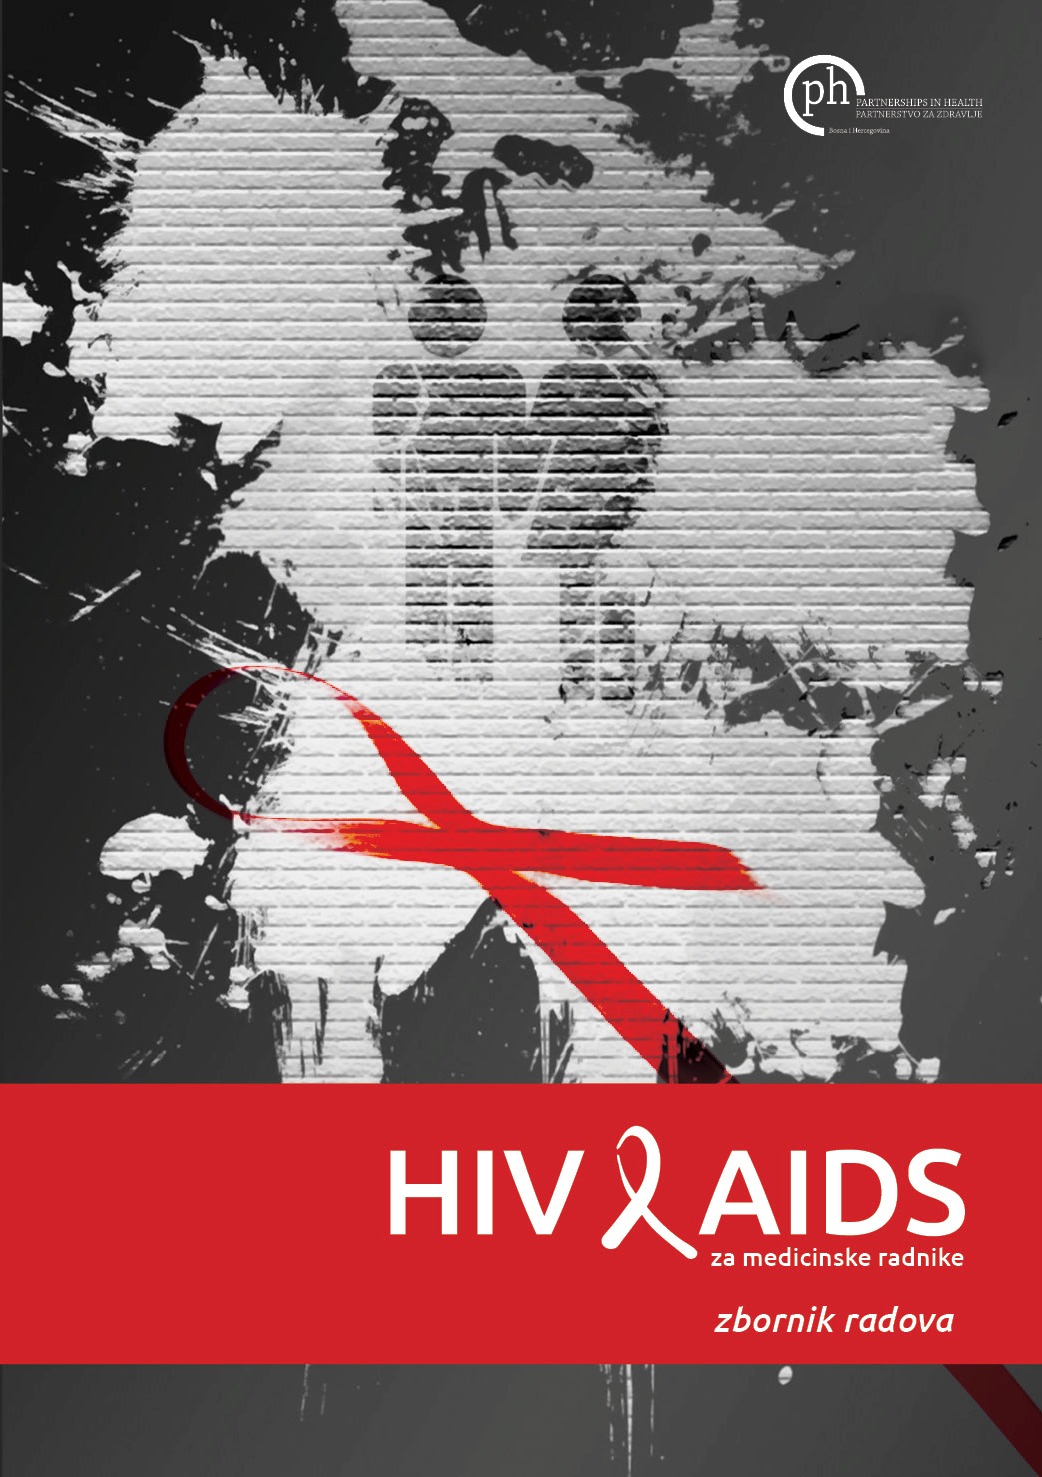 HIV/AIDS za medicinske radnike - zbornik radova